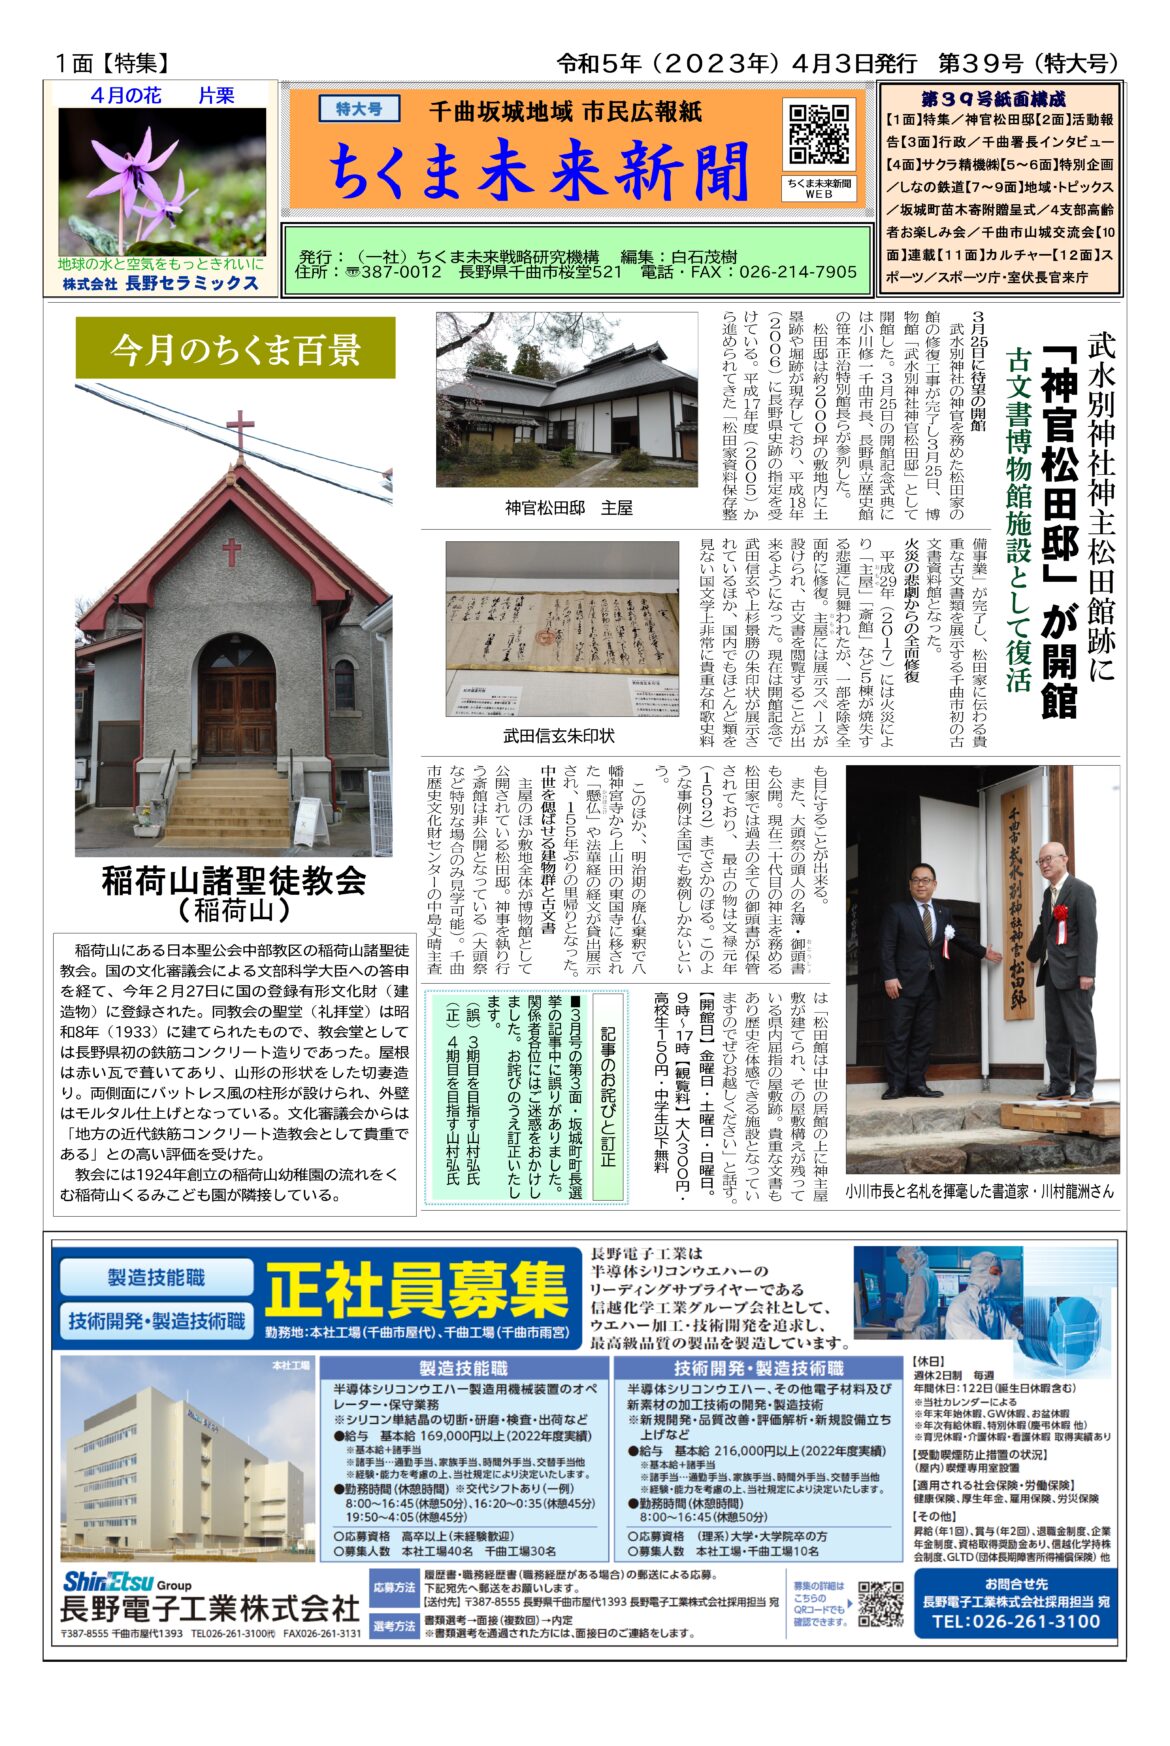 ちくま未来新聞　千曲坂城地域 市民広報紙　第３９号紙面構成　